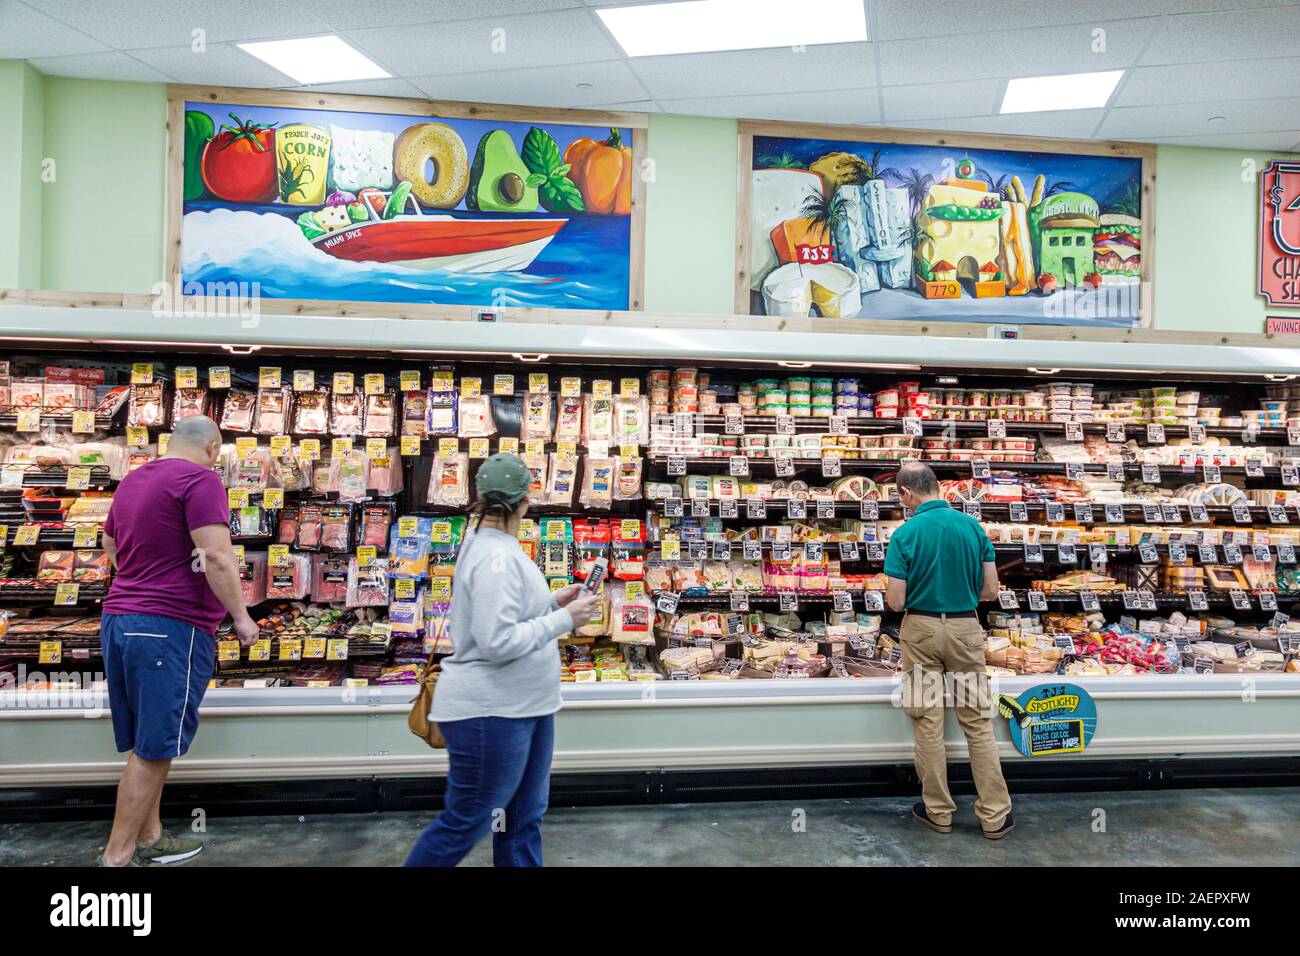 Miami Beach Florida, Trader Joe's, alimentari supermercato alimentari alimentari, shopping, interno, deli, formaggio, salumi, custodia refrigerata, donna, uomo, esposizione sal Foto Stock